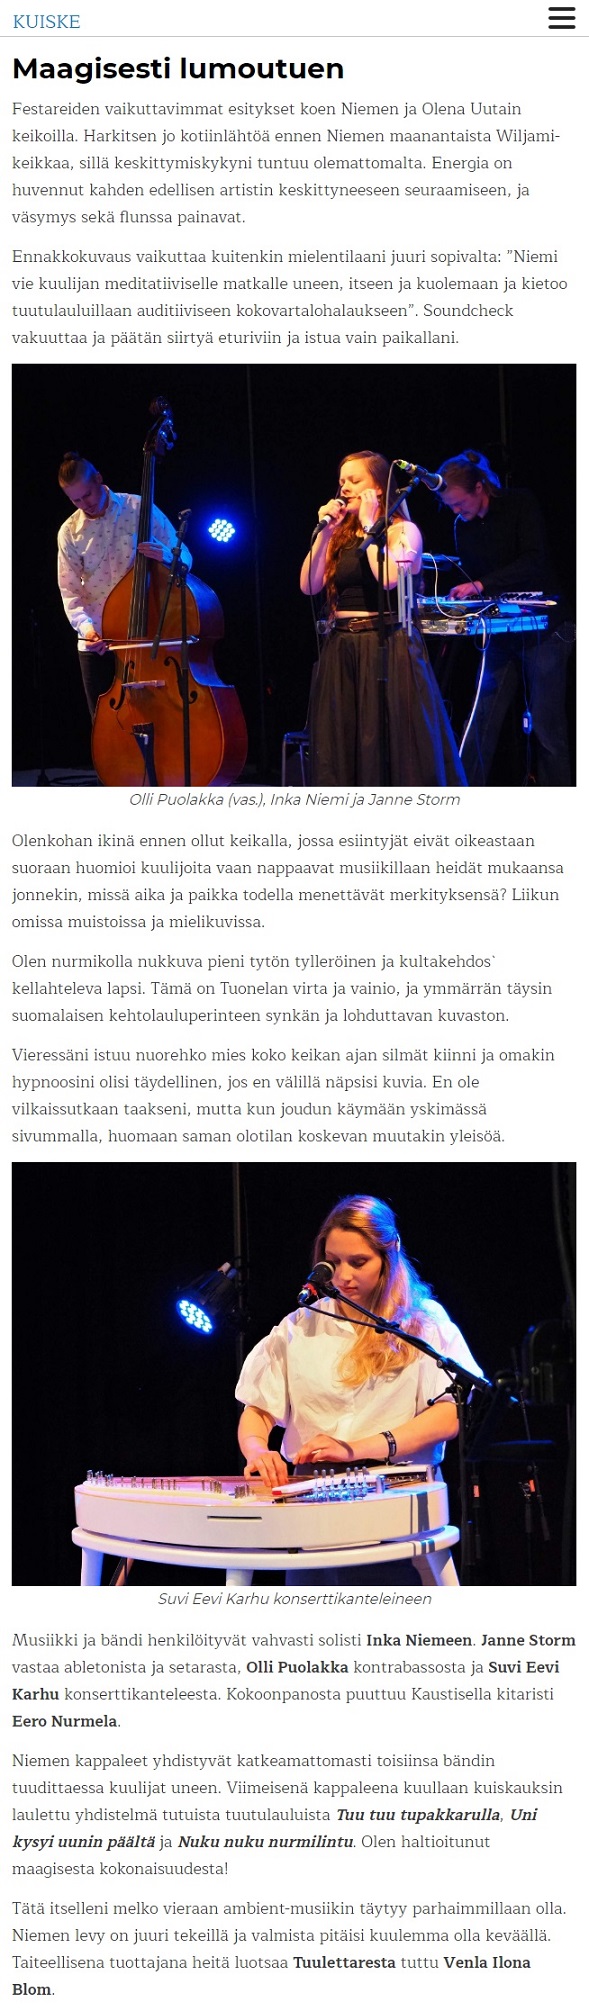 Kuiske (Finland), 29.7.2019